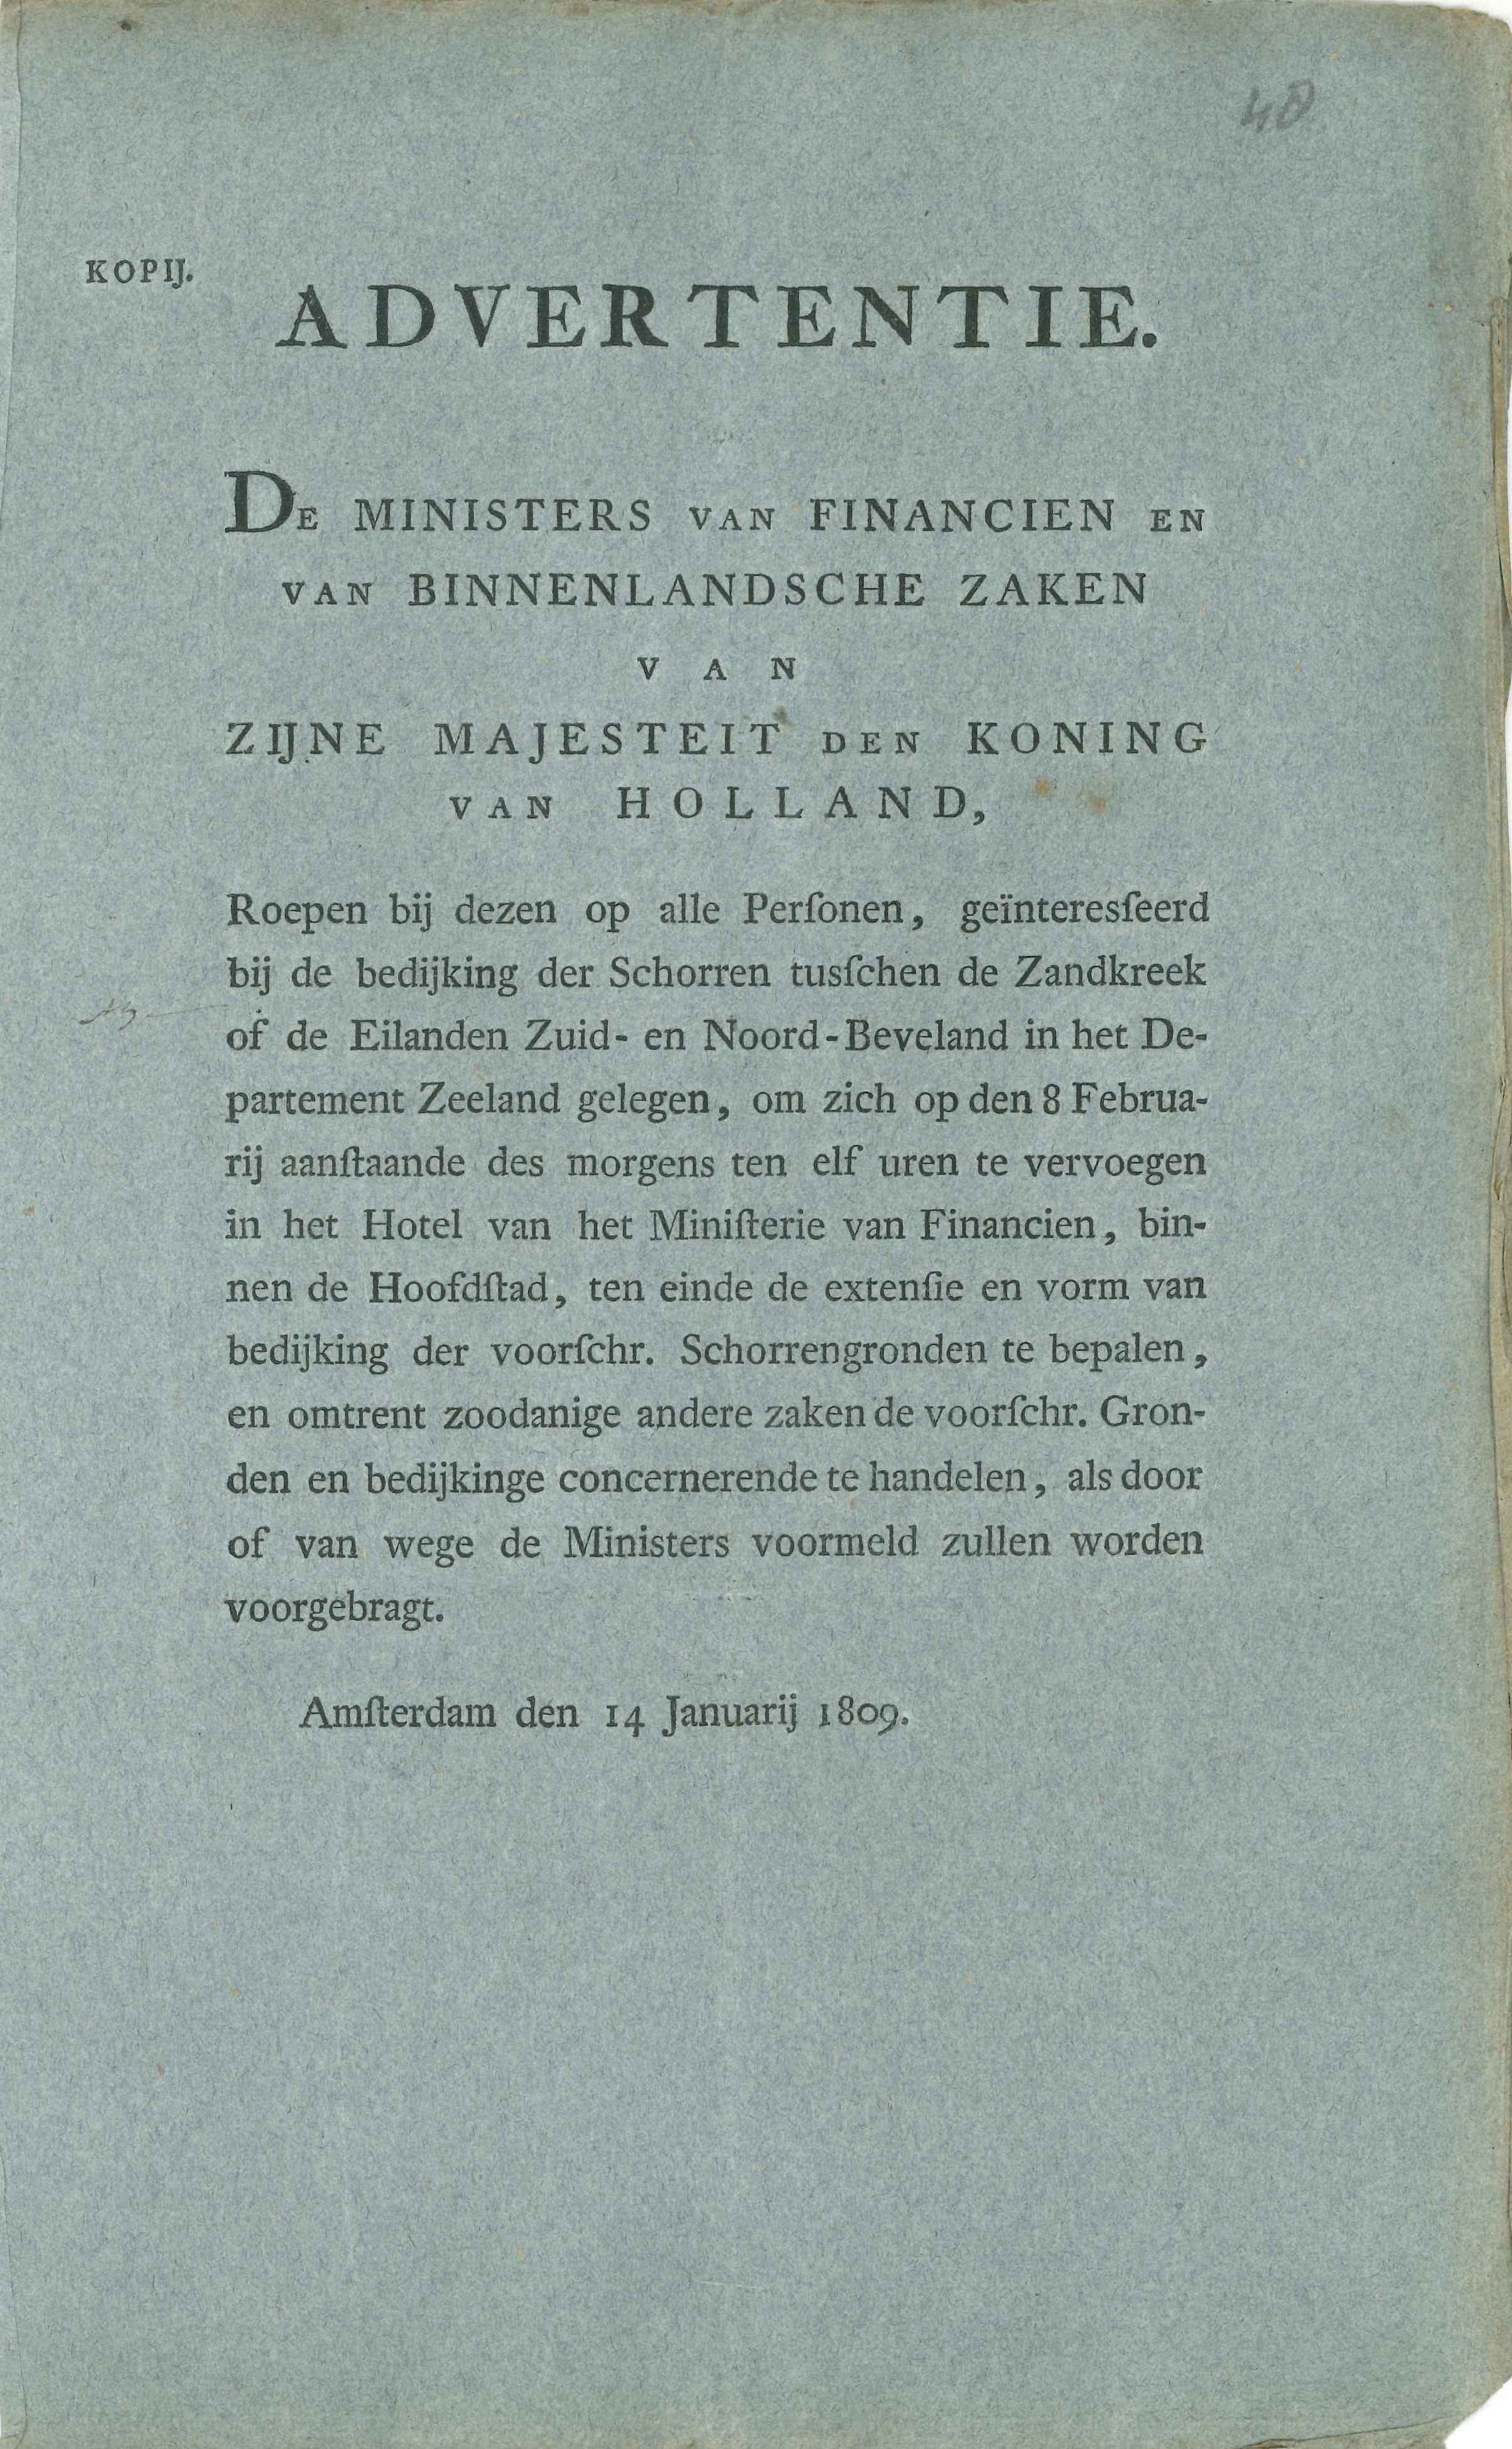 Advertentie over de bedijking van de latere Wilhelminapolder, 1809.